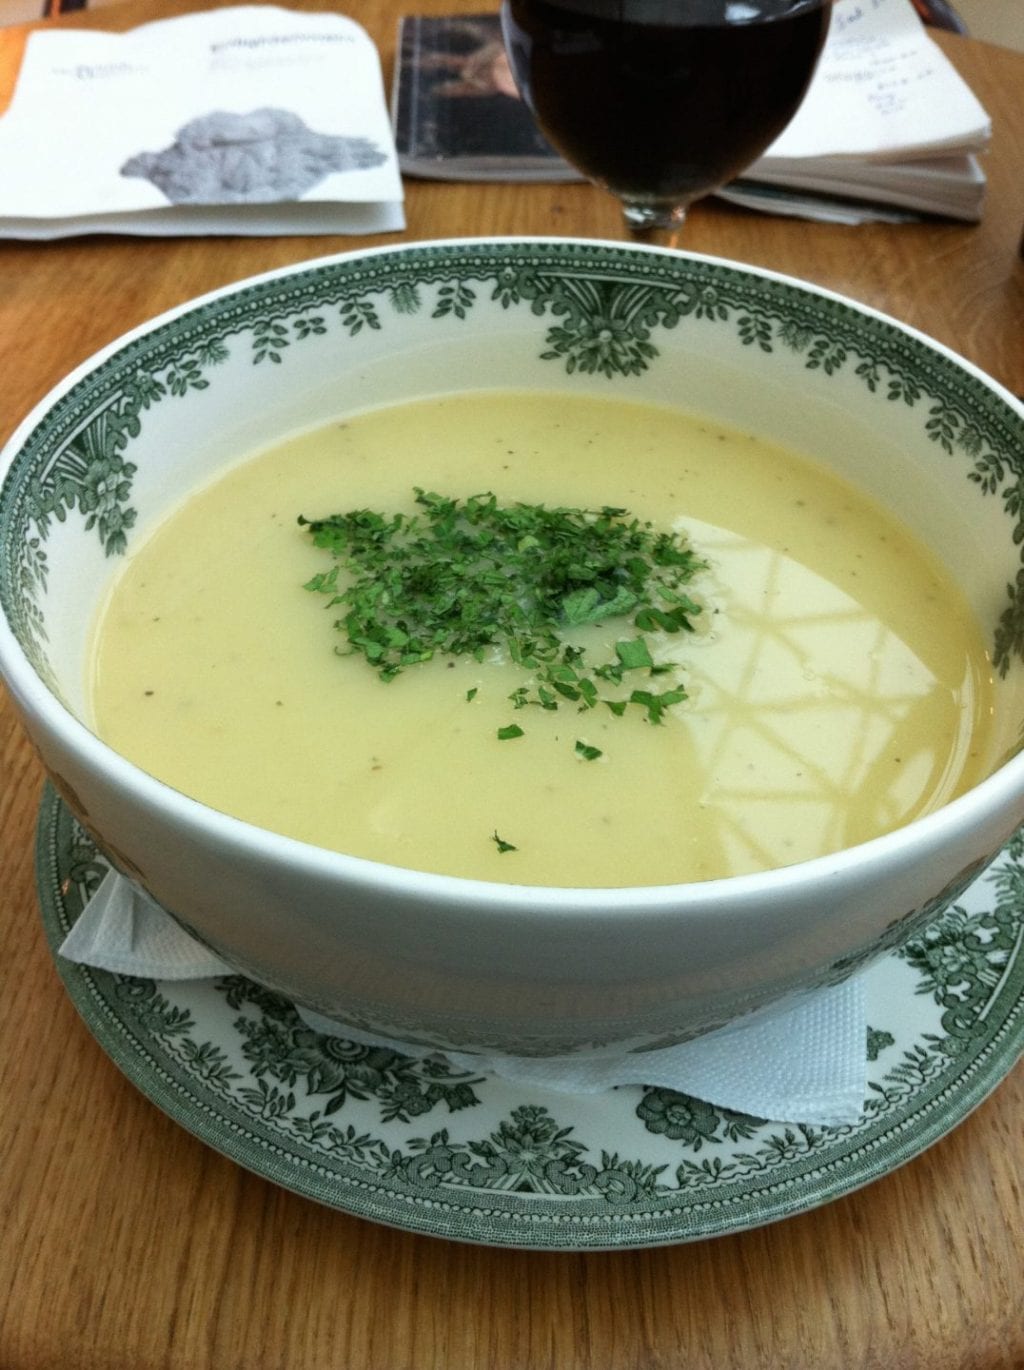 Soup - The Court Café, British Museum